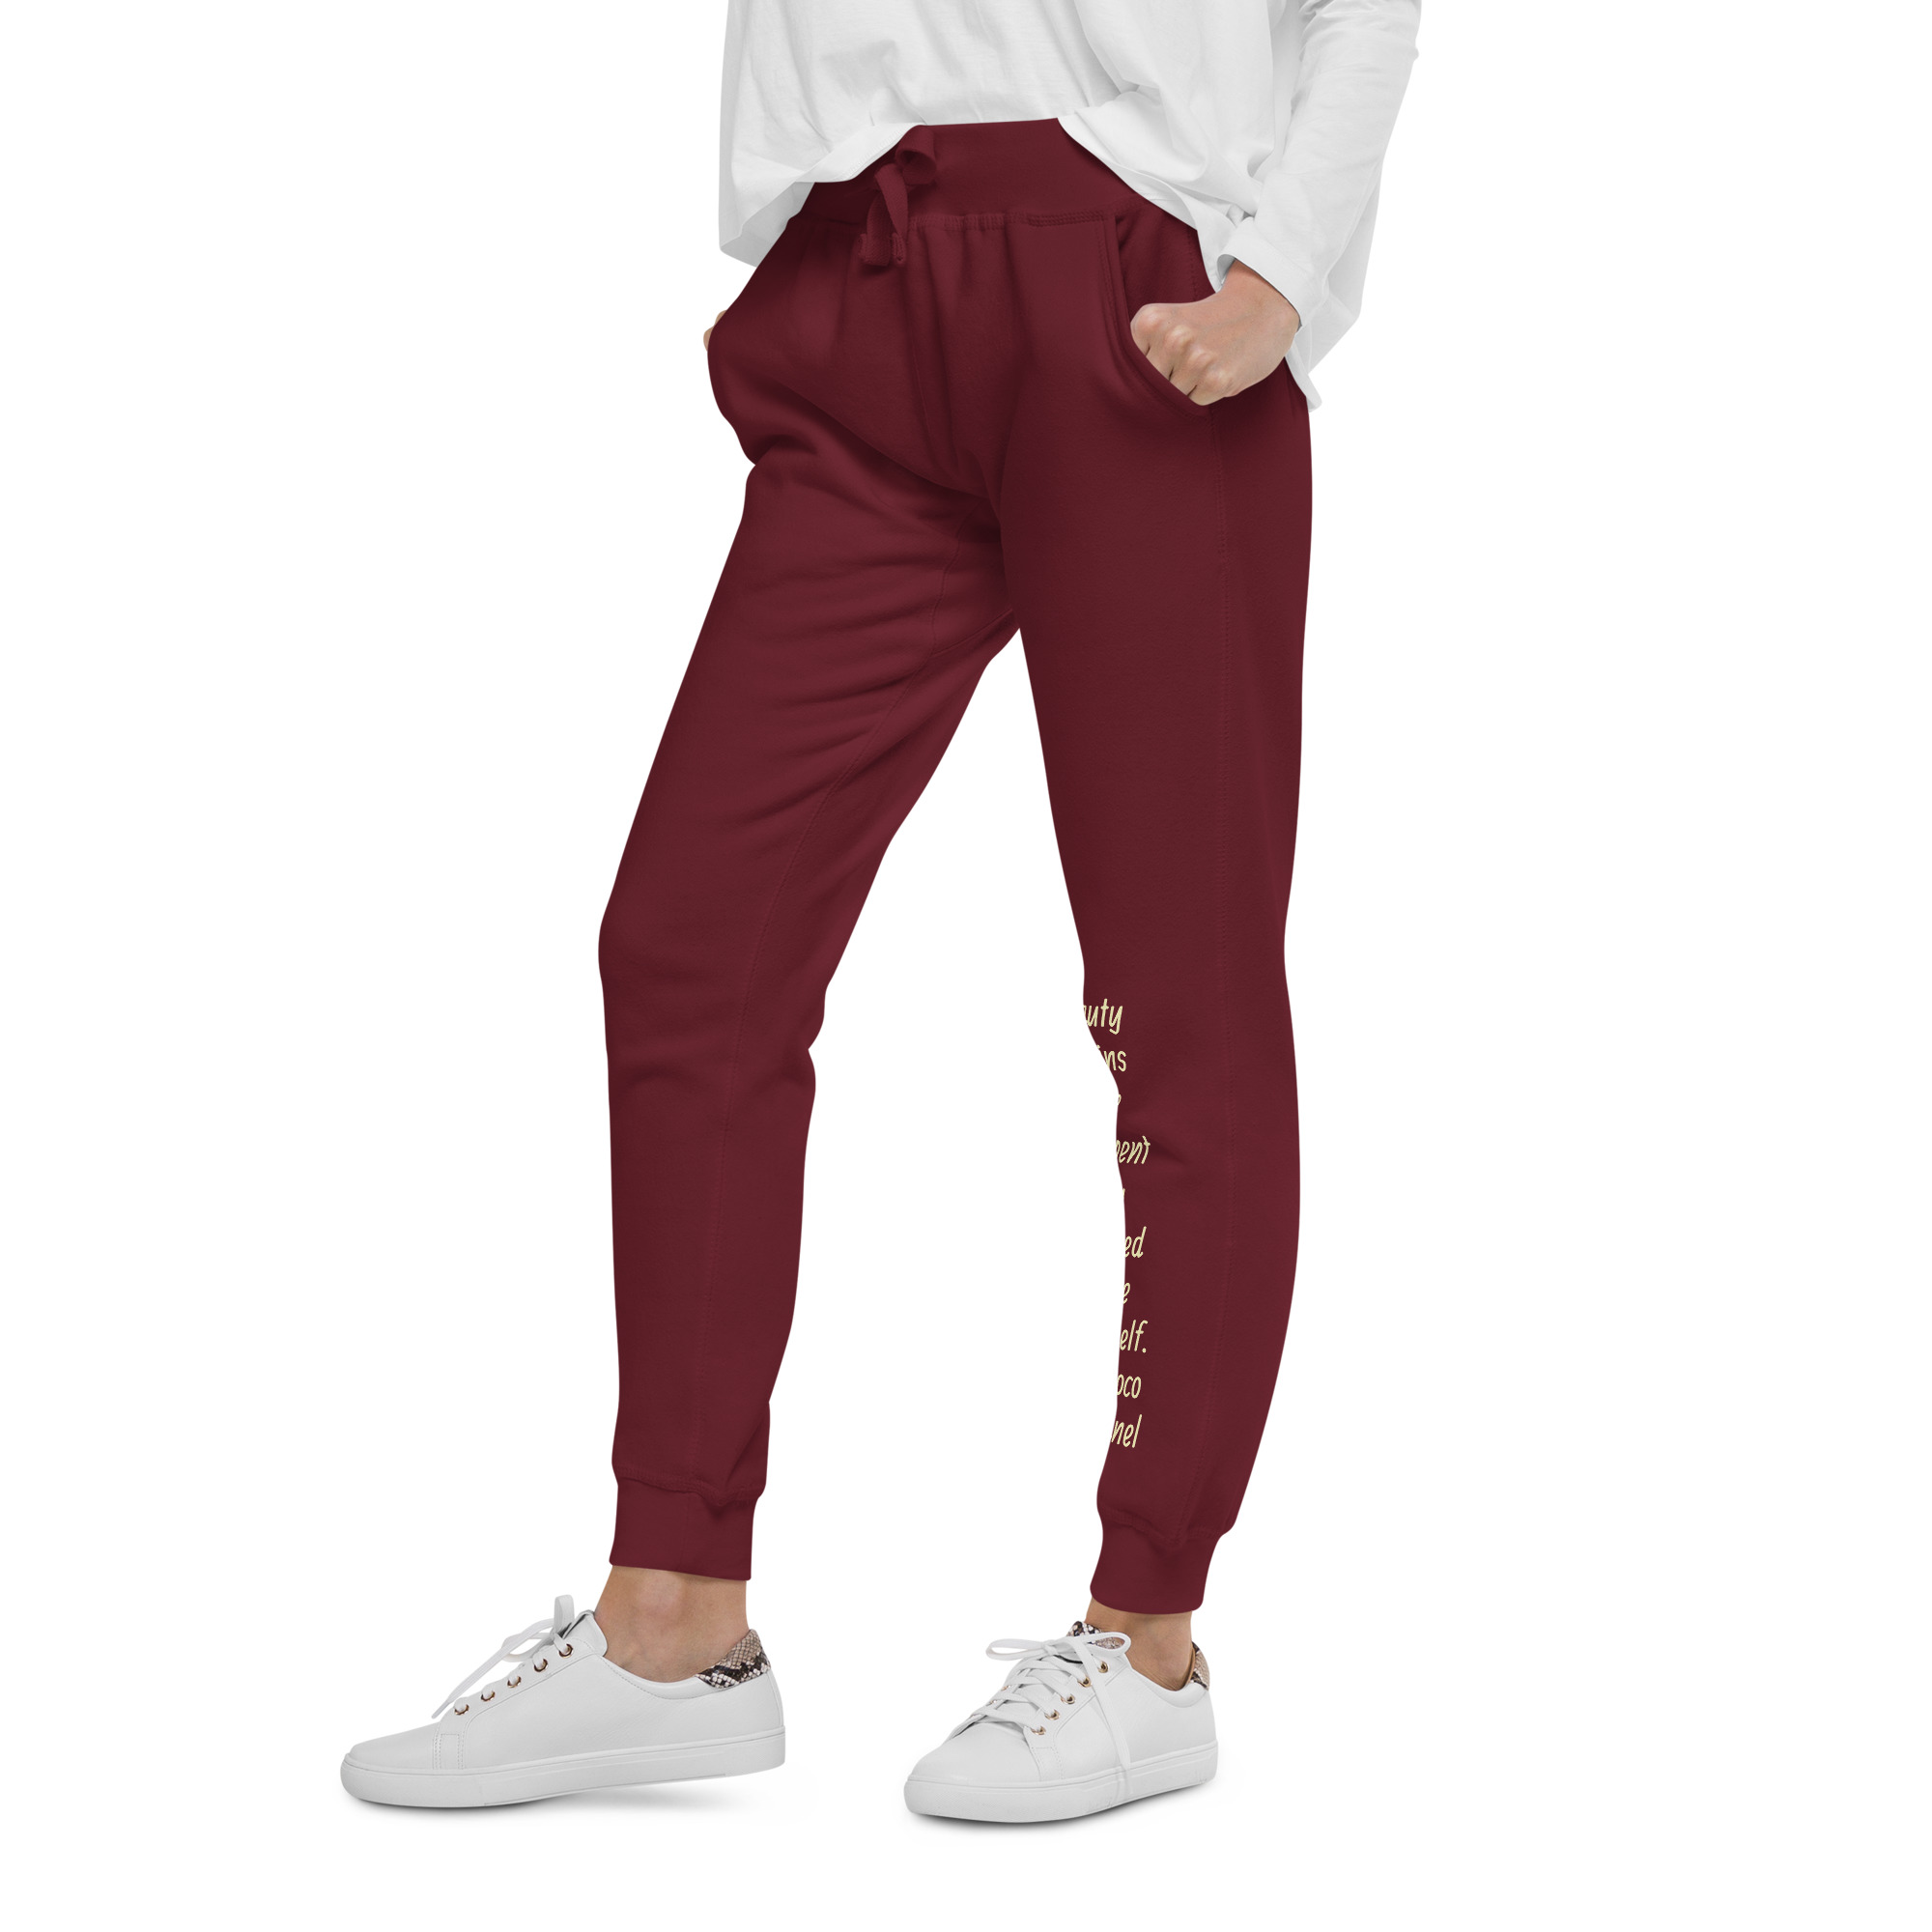 unisex-fleece-sweatpants-maroon-left-front-654be9440deb7-2.jpg